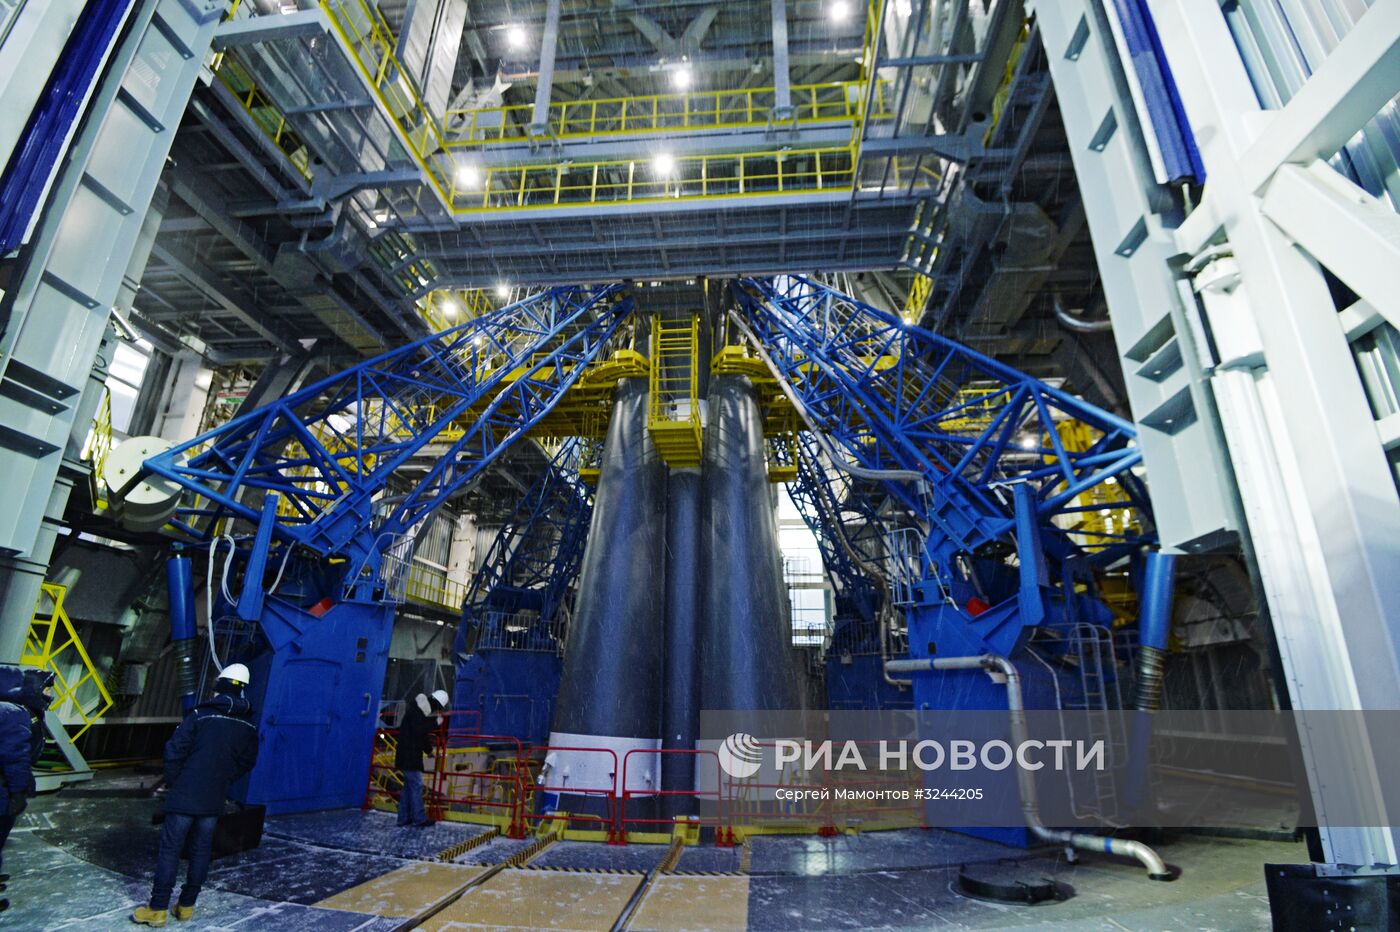 Подготовка к пуску ракеты носителя "Союз-2.1б" с КА "Метеор" с космодрома Восточный